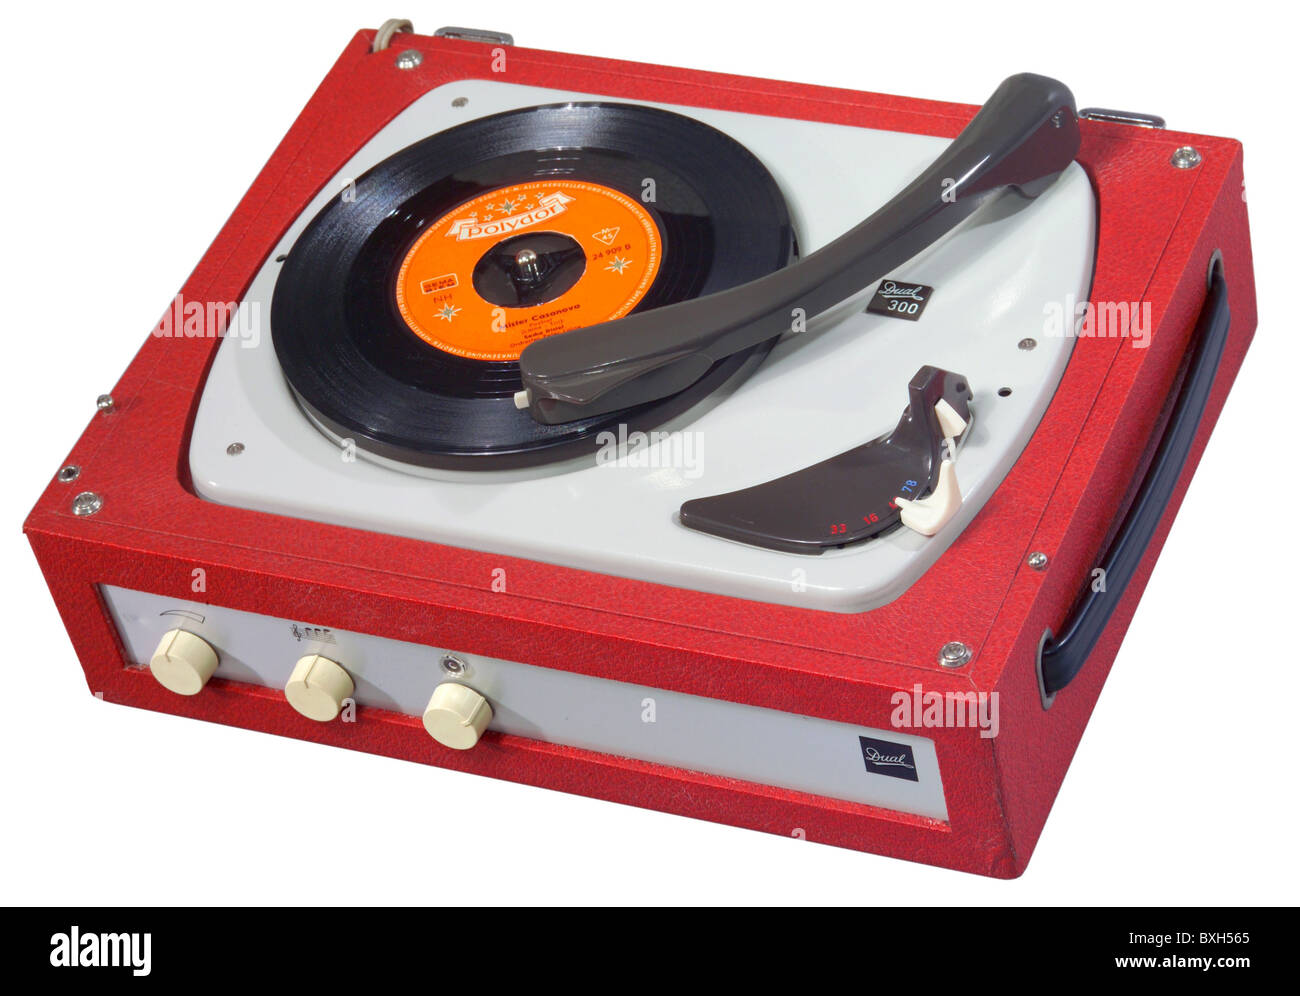 technic, giocatori di dischi, doppio giocatore di dischi, Phonokoffer Dual 300 V, realizzato da Dual Steidinger, St. Georgen, Foresta Nera, Germania, 1959, Additional-Rights-Clearences-Not Available Foto Stock